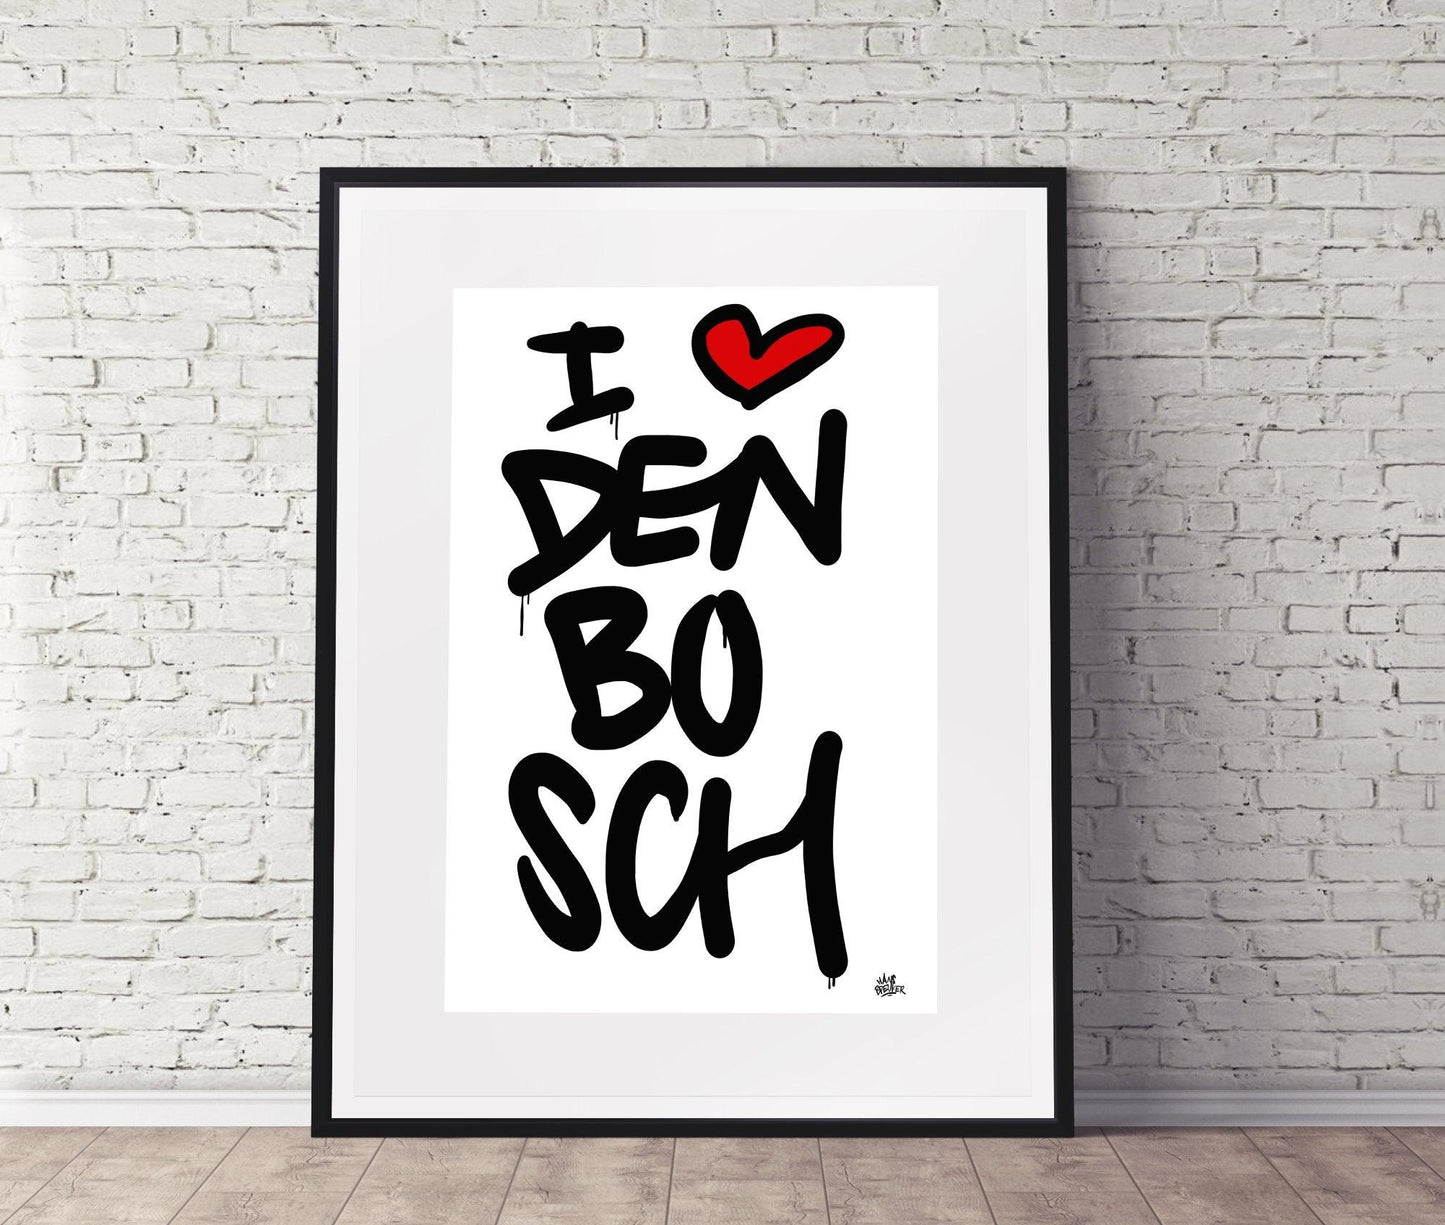 Poster Den Bosch - Hans Breuker